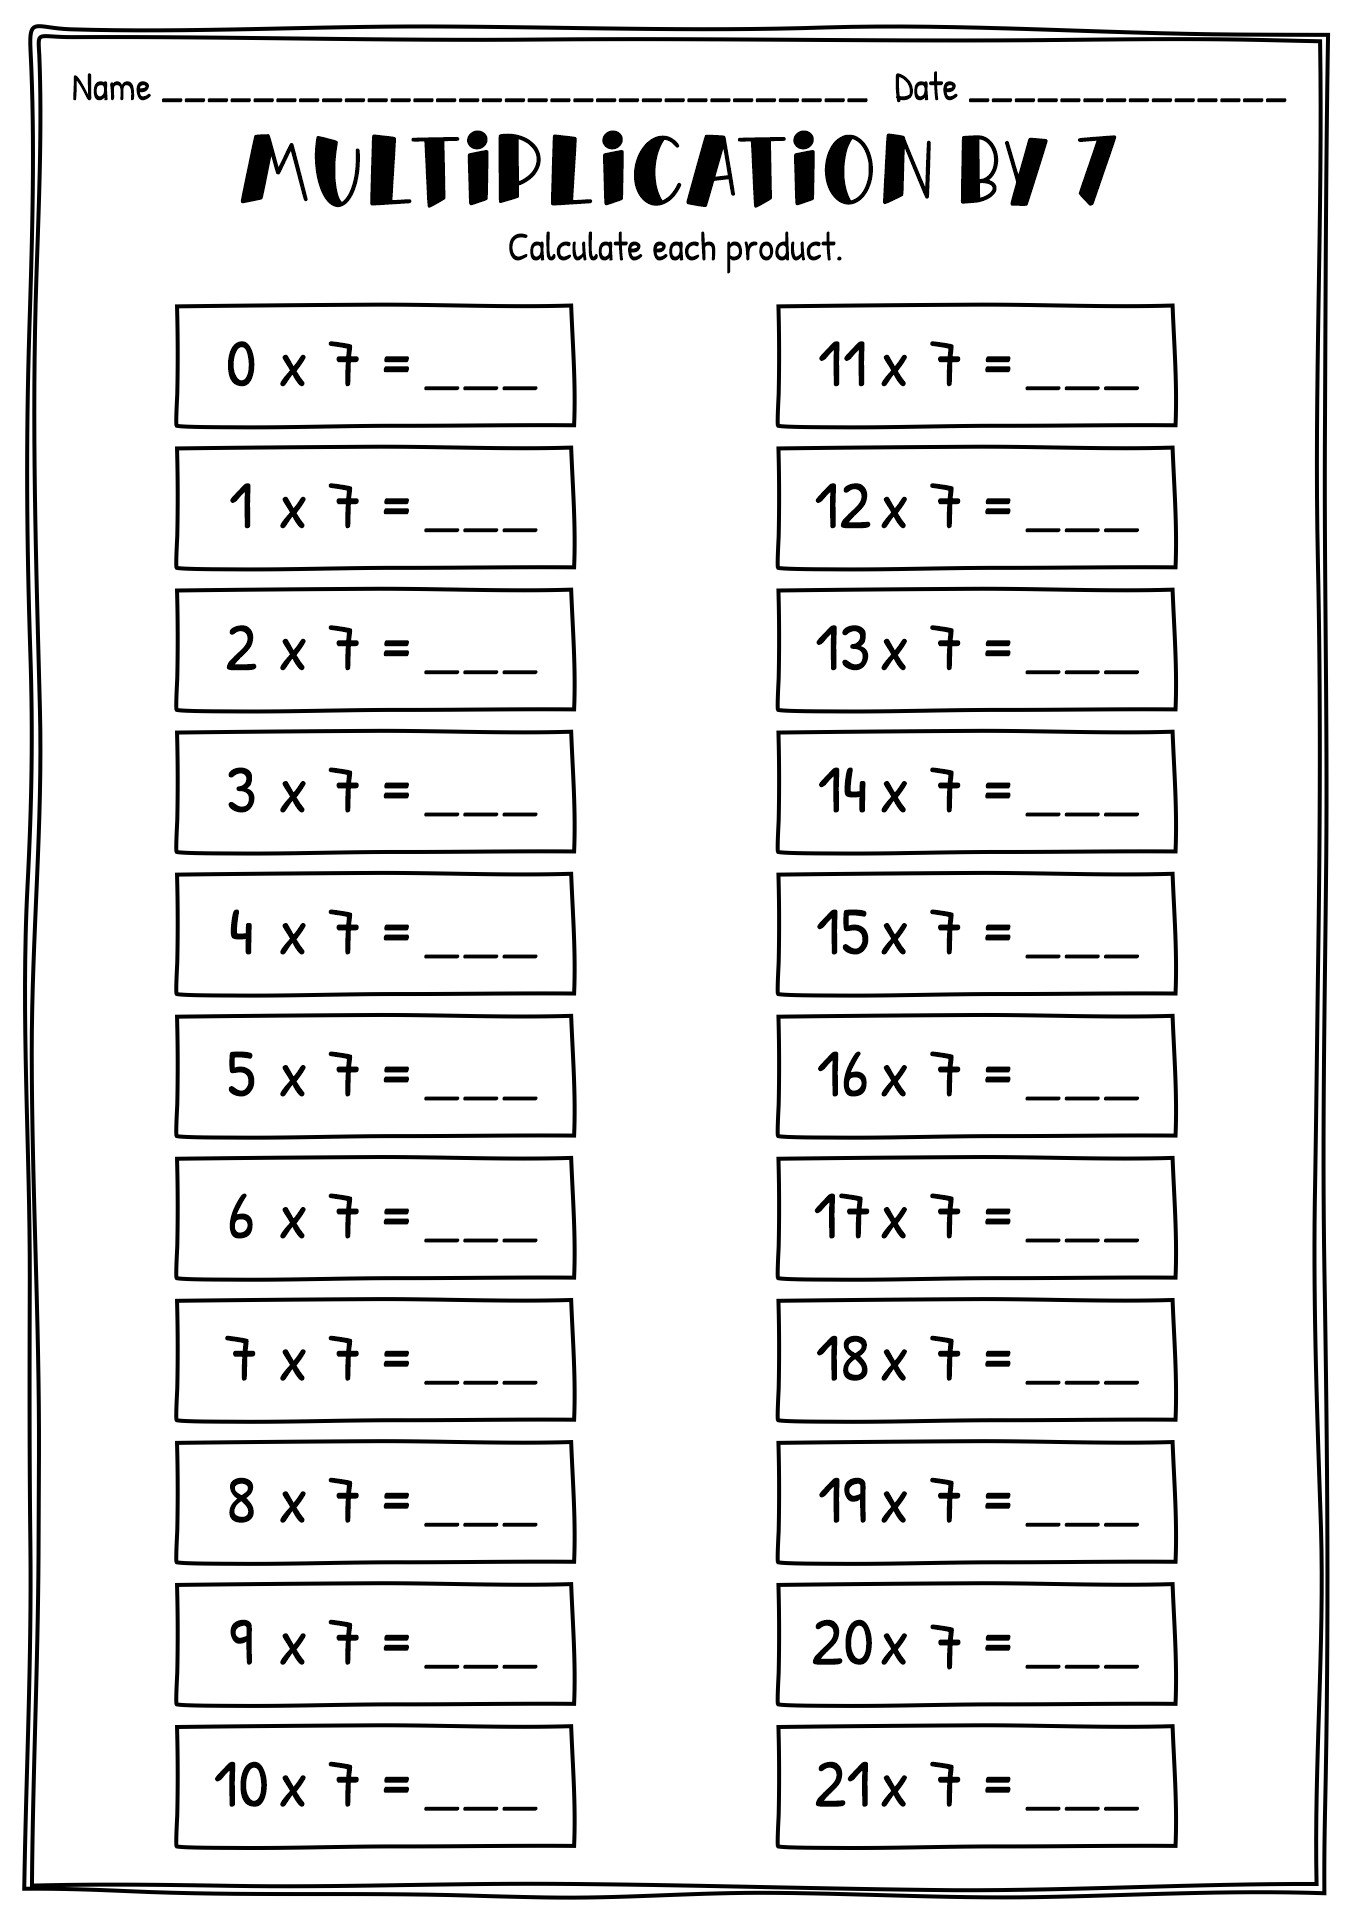 11-best-images-of-multiplication-worksheets-4s-1-multiplication-worksheet-printable